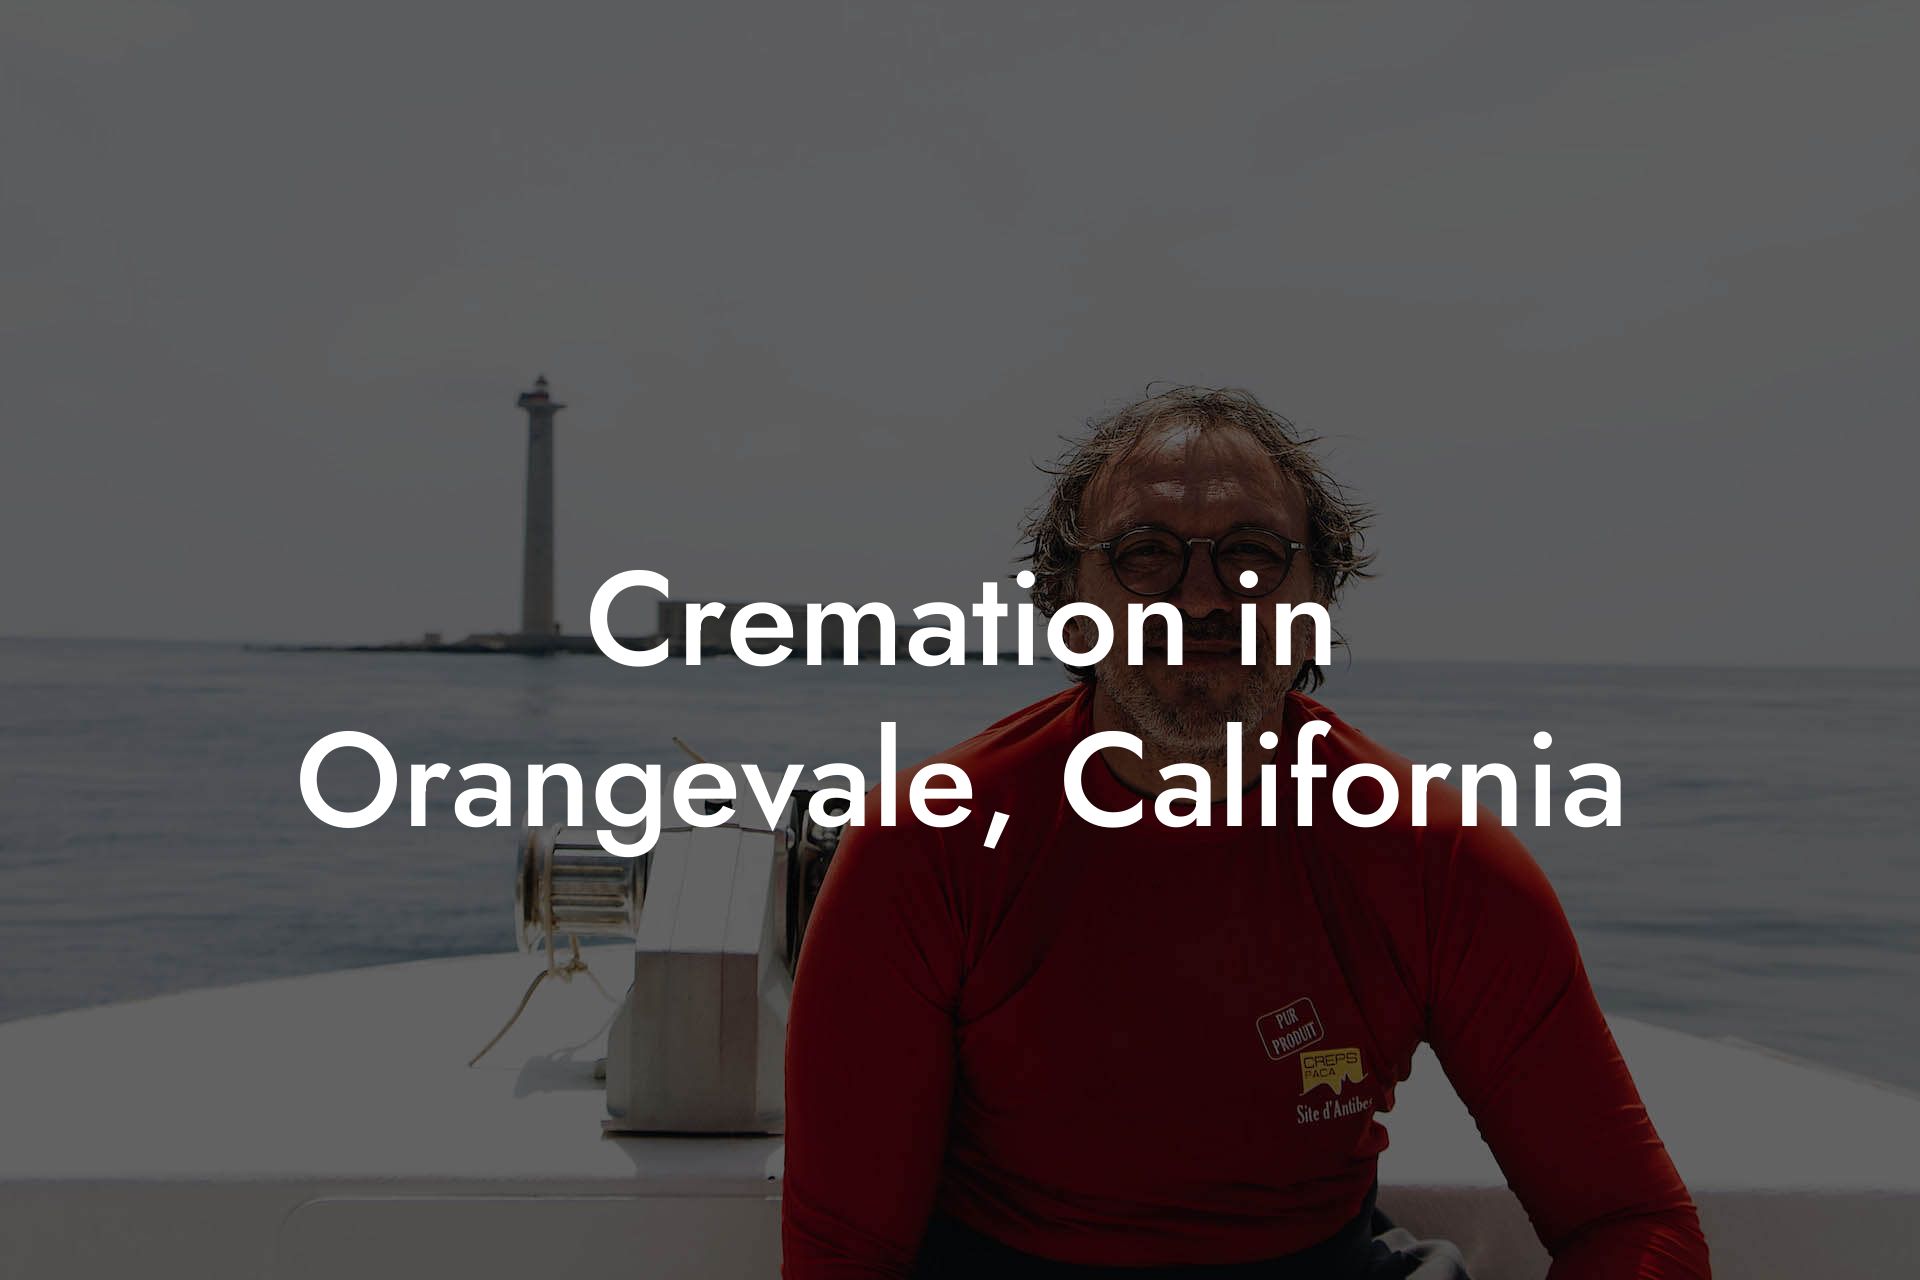 Cremation in Orangevale, California